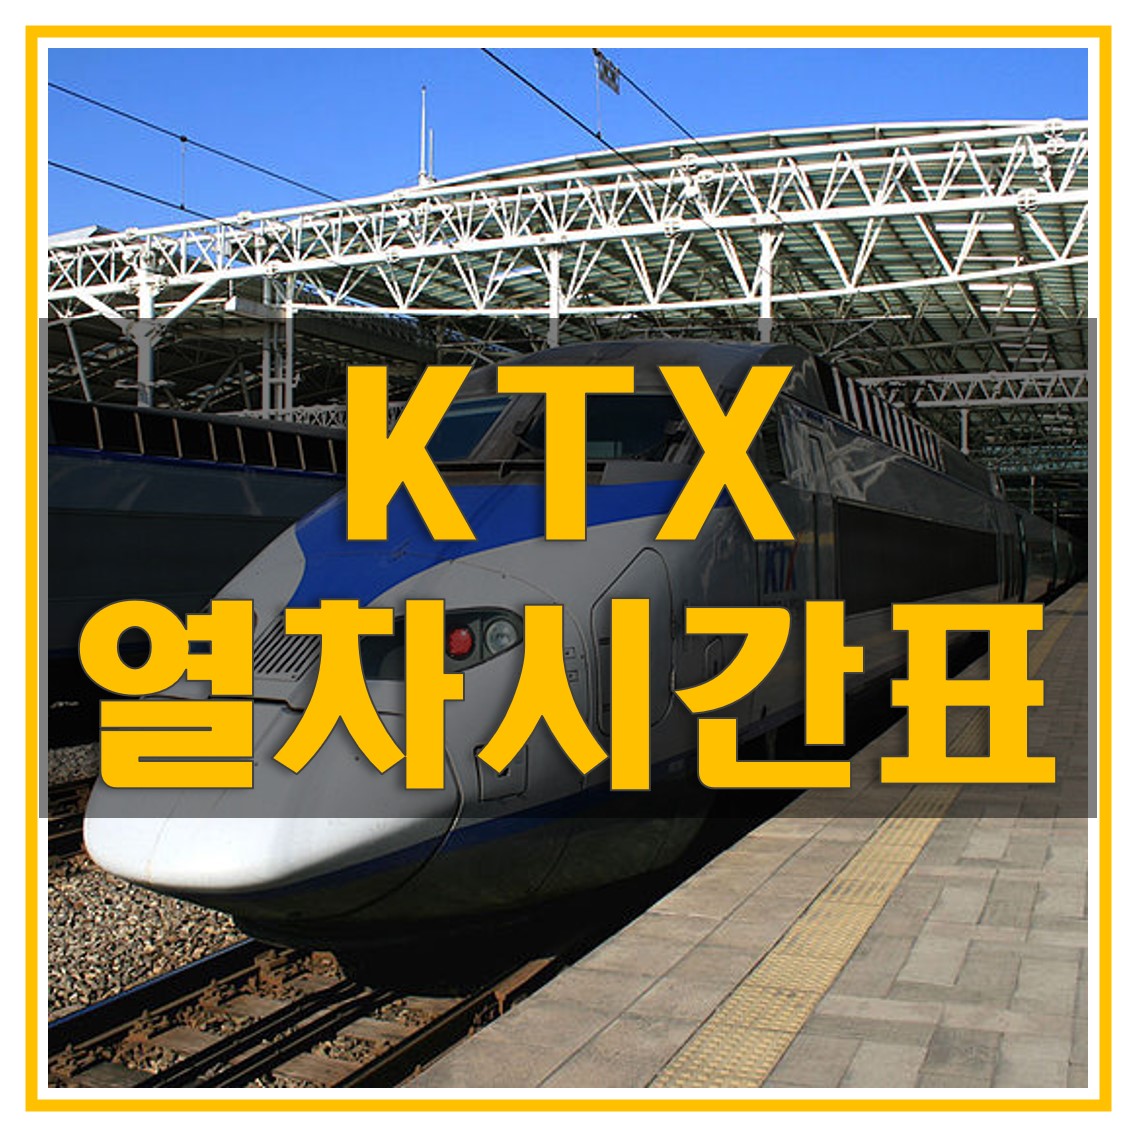 KTX-열차-시간표-다운로드-썸네일